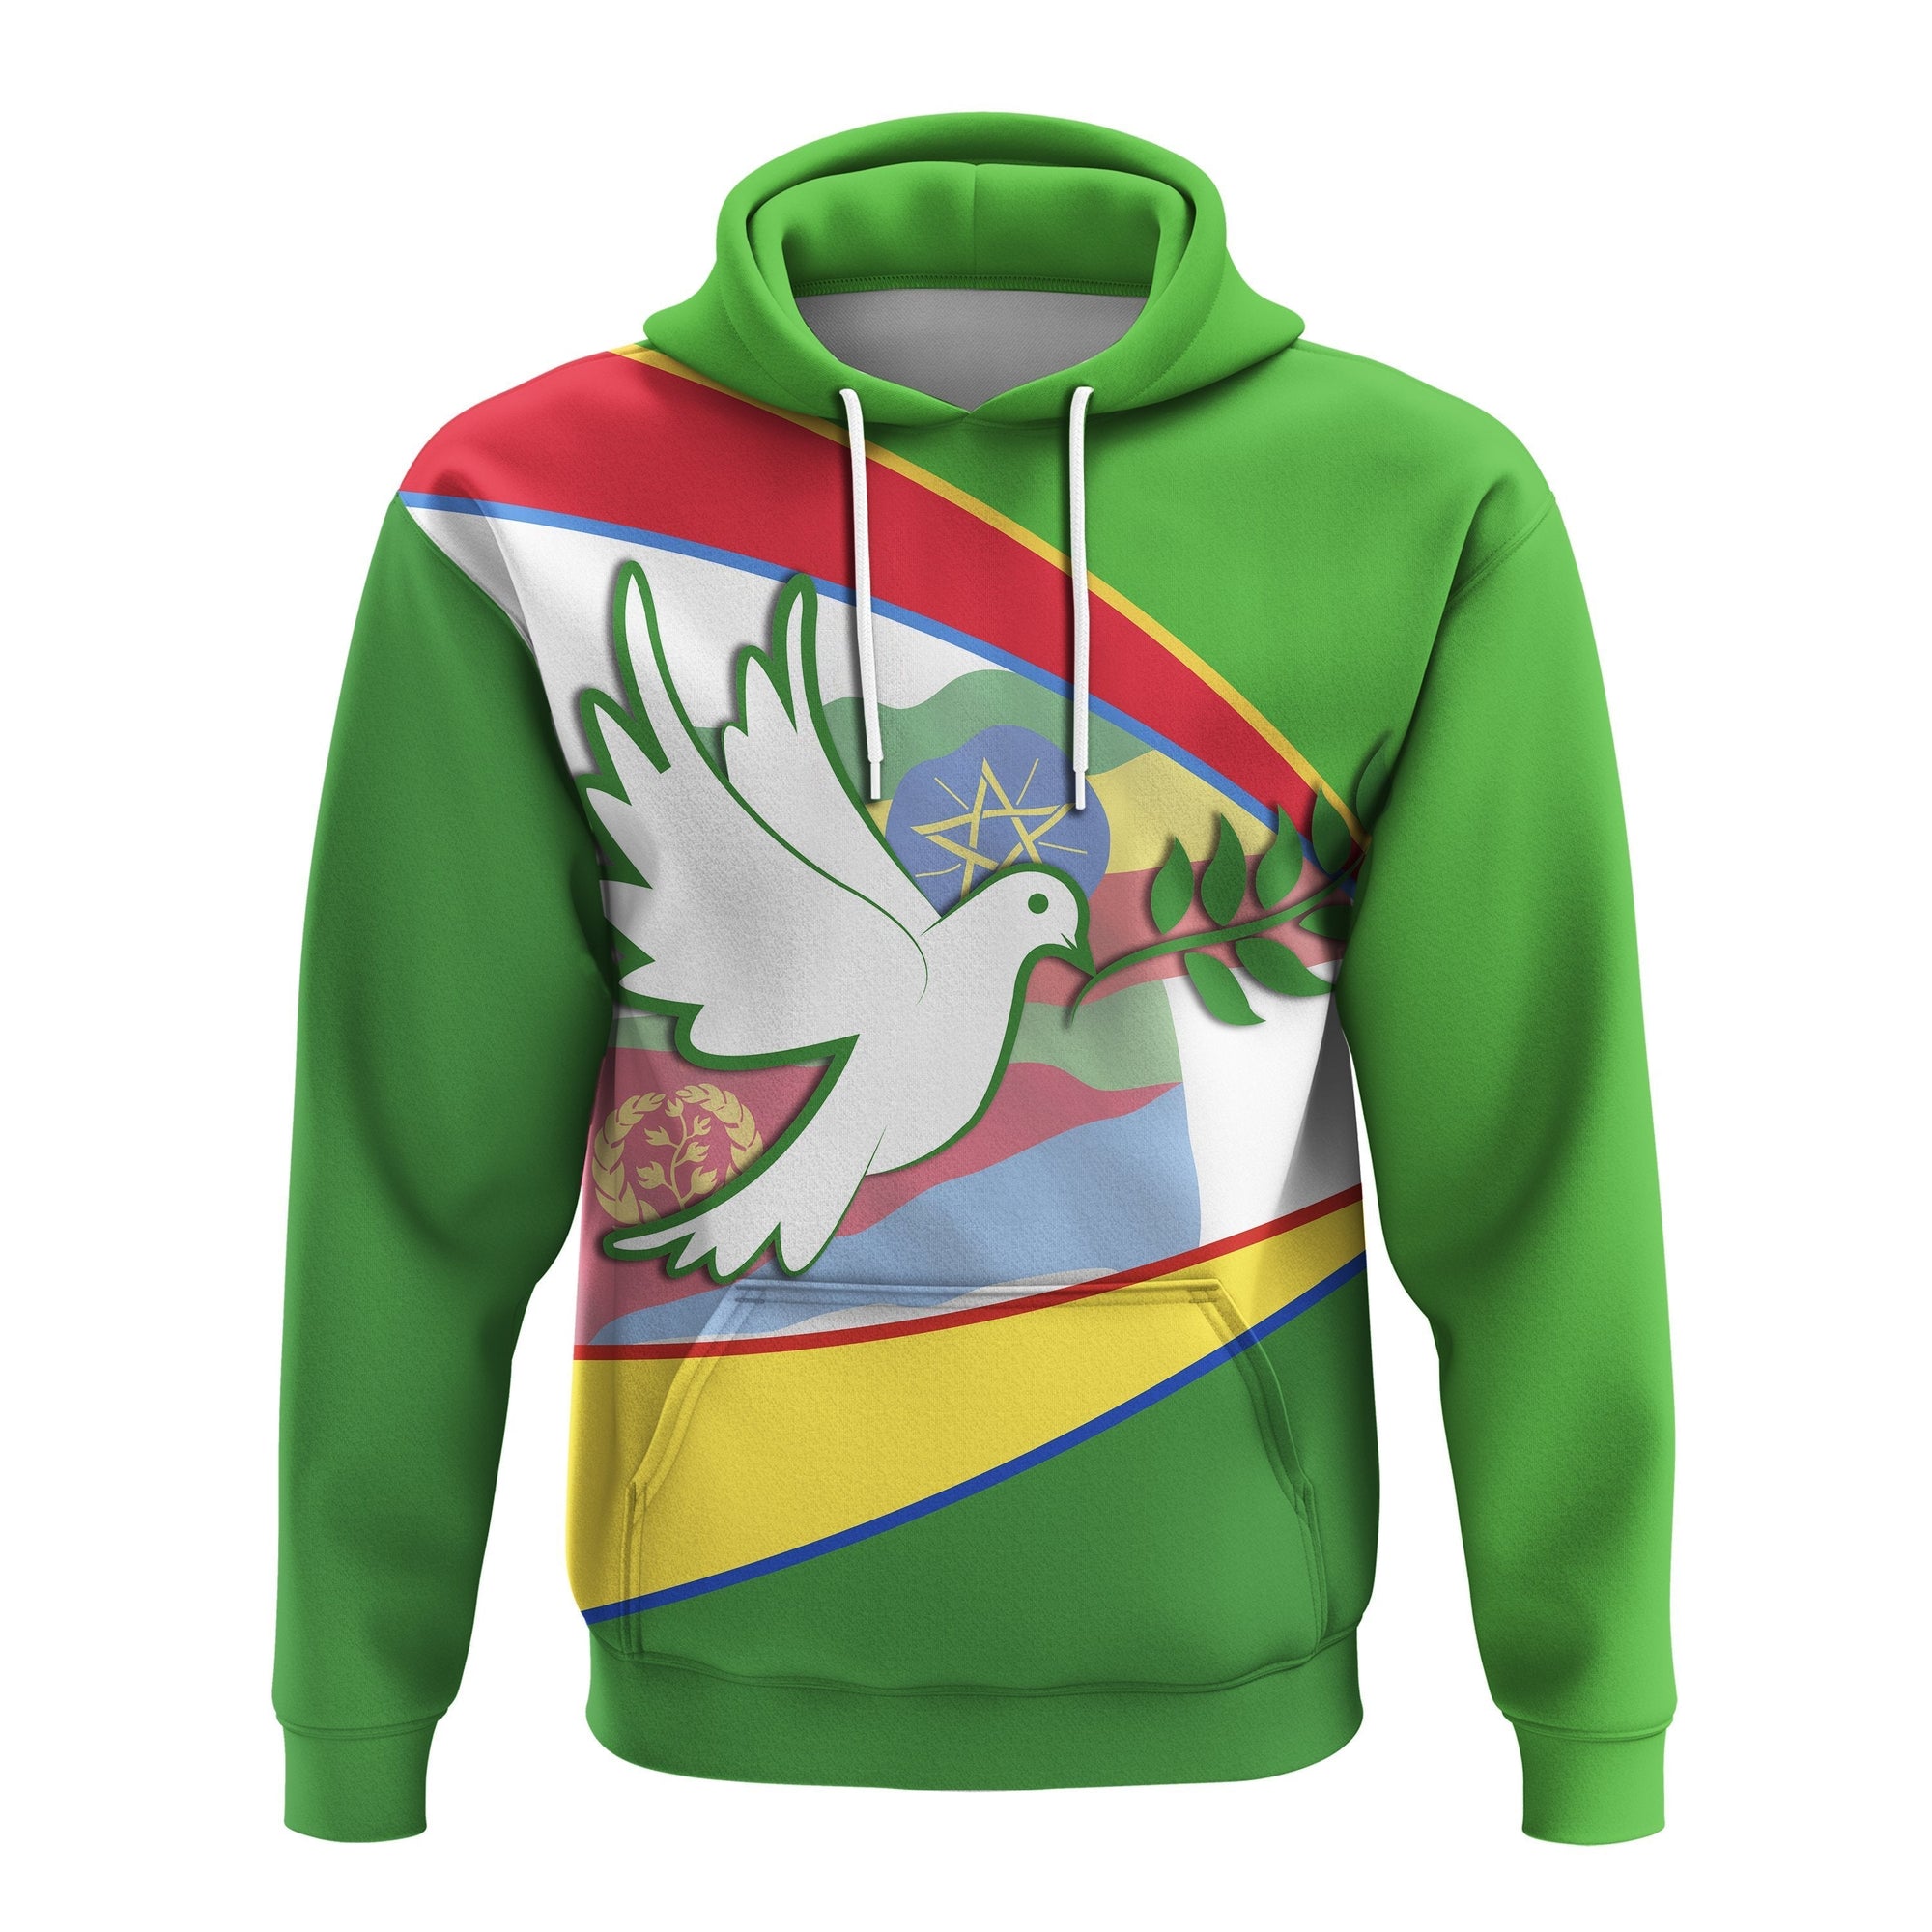 ethiopia-and-eritrea-hoodie-new